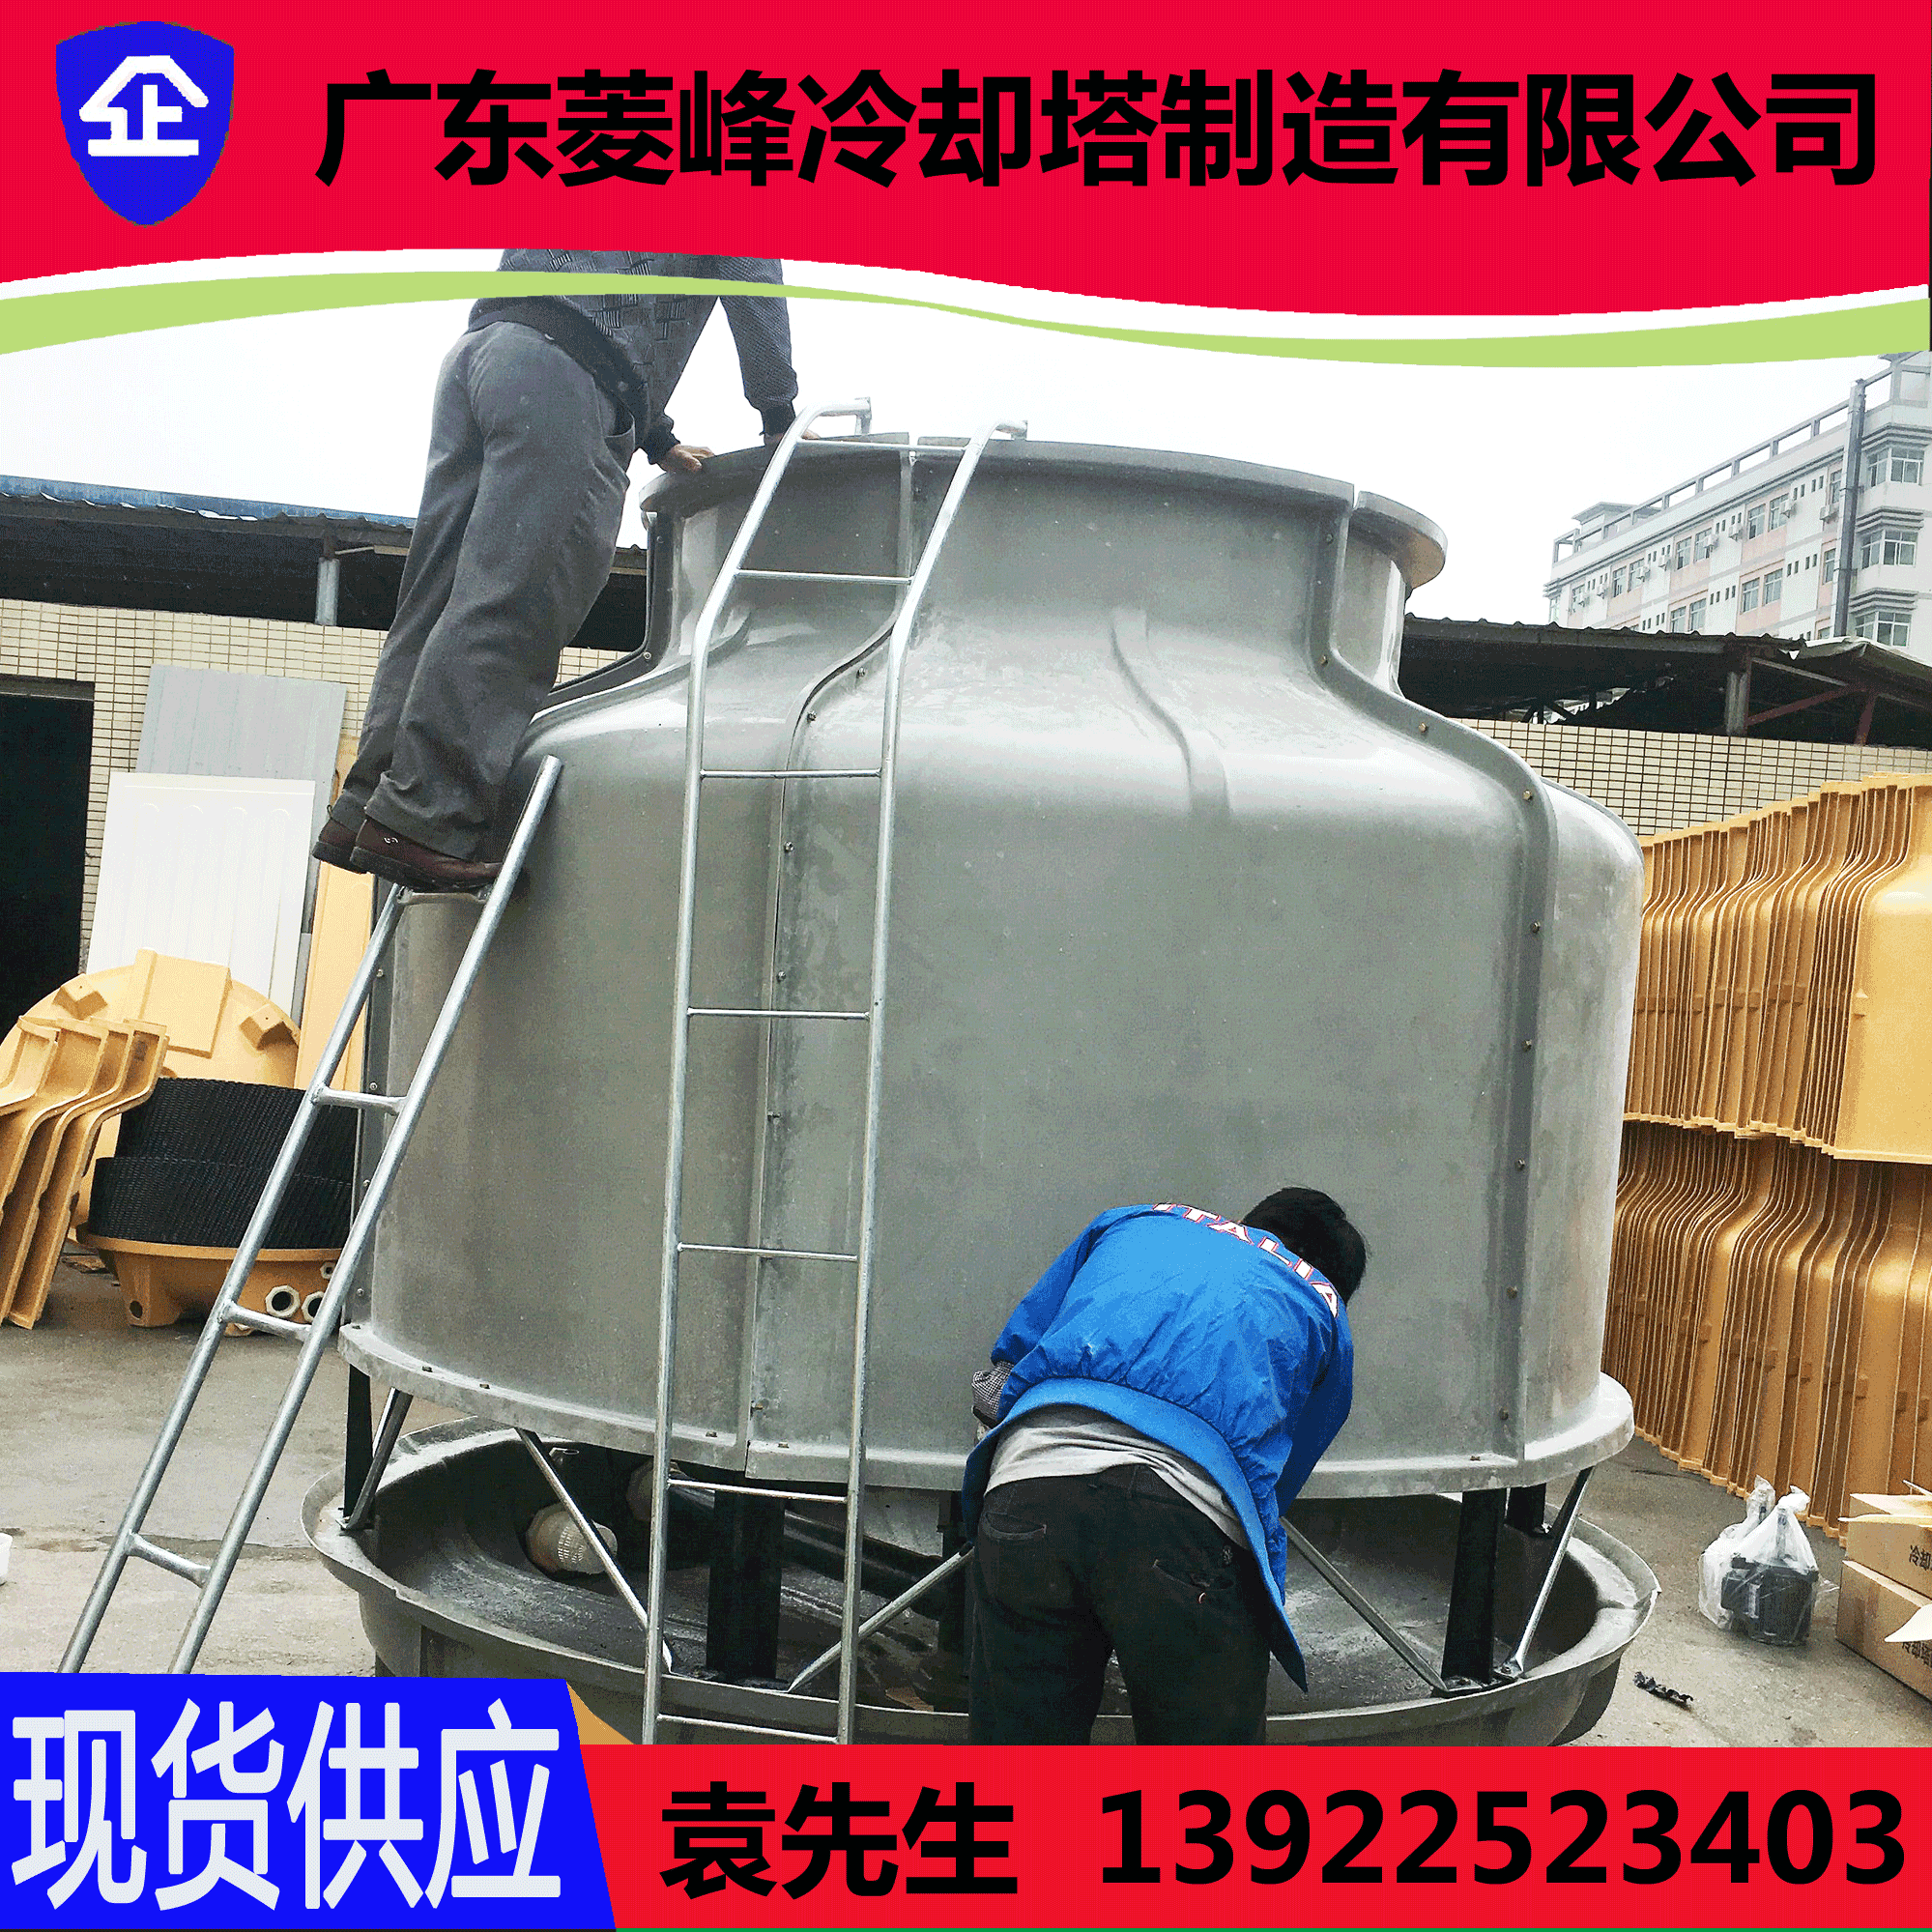 【江苏扬州冷却塔】玻璃钢8T/吨冷却塔改造-一呼百应网图片